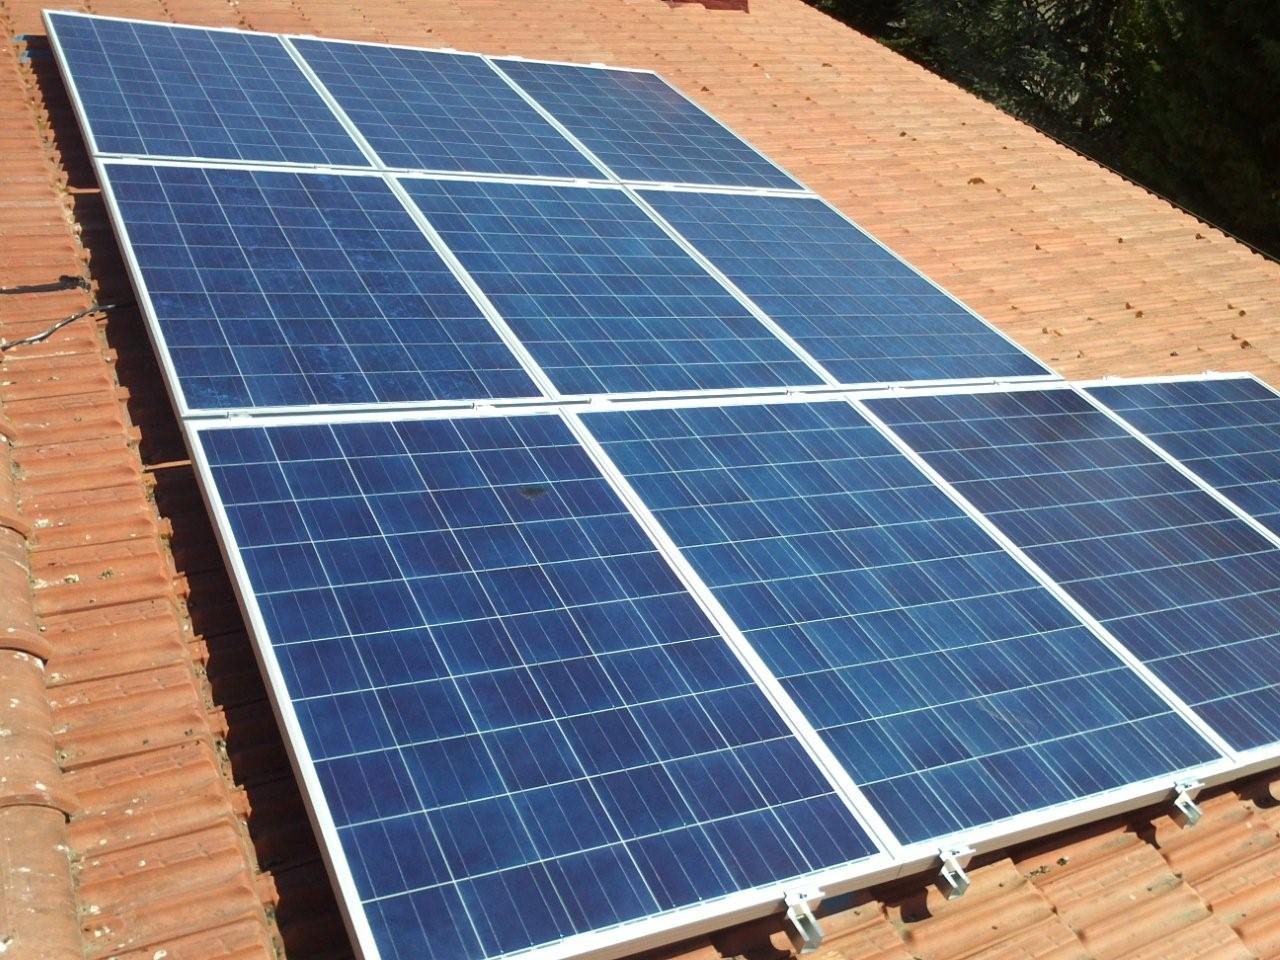 Impianto Impianti Solari Fotovoltaici 2016. Cogli le opportunità e la convenienza Barberino del Mugello Firenze